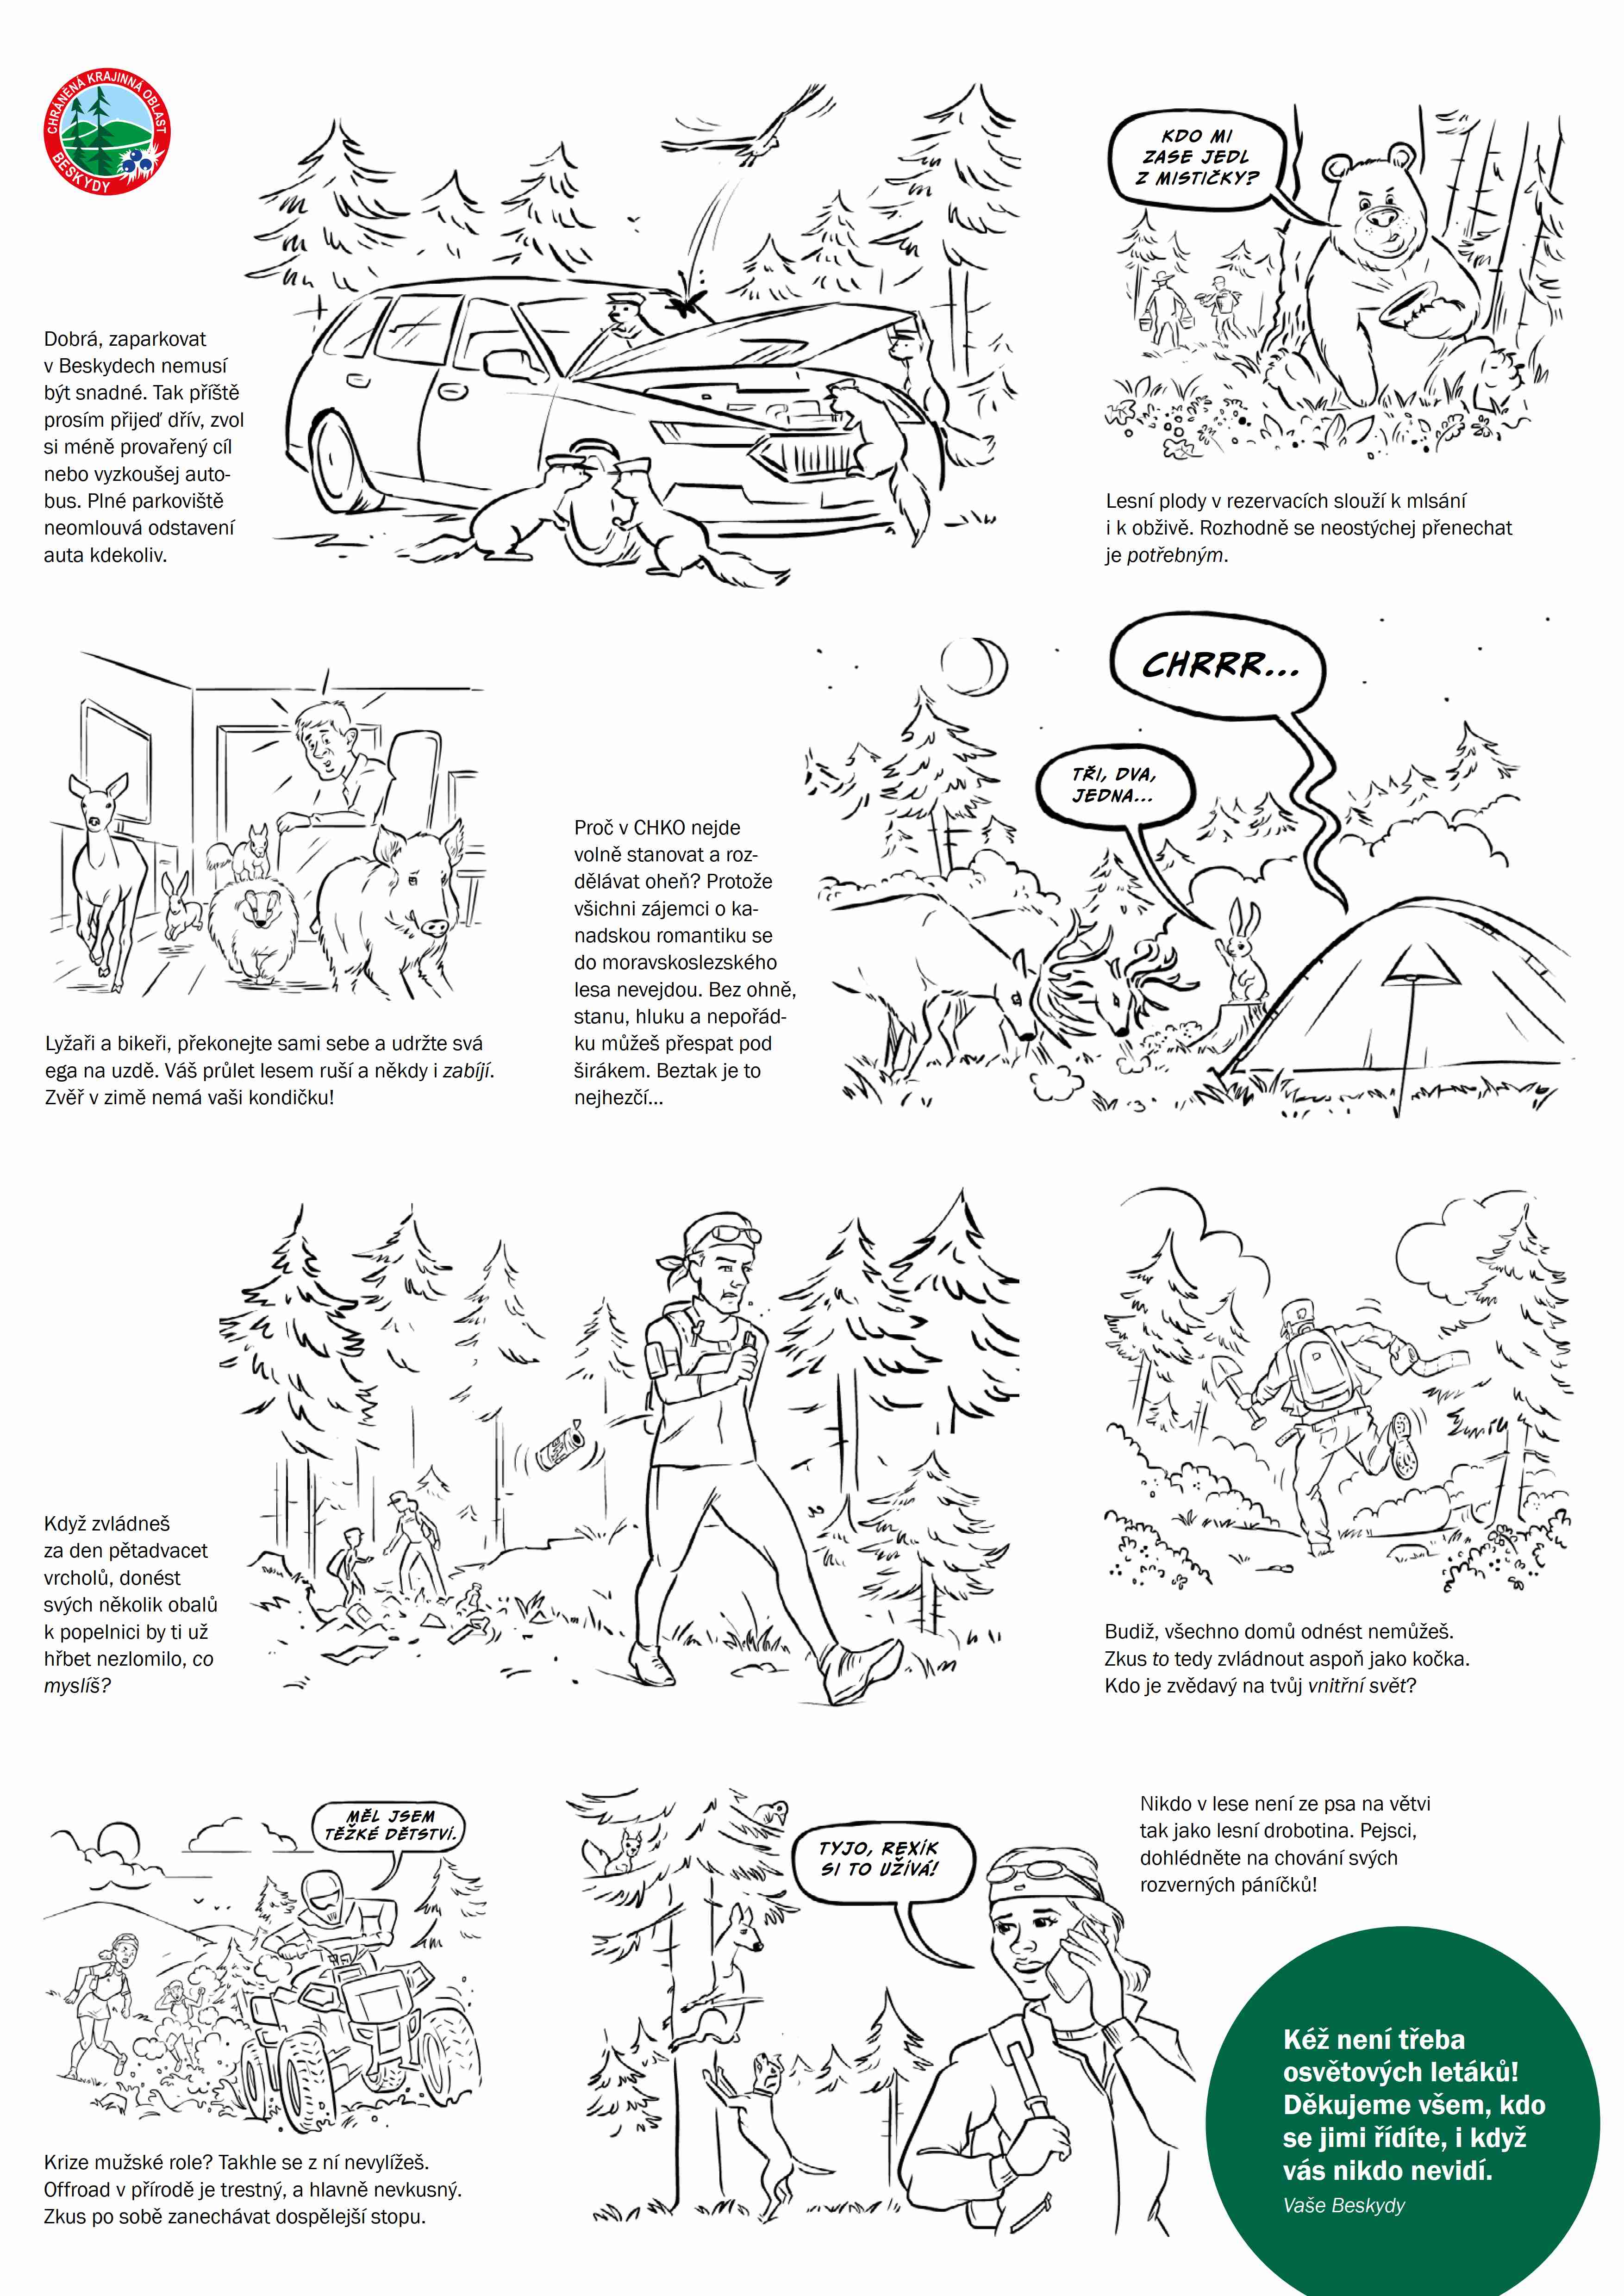 Komiksové zpracování základních pravidel, jak se chovat v přírodě.